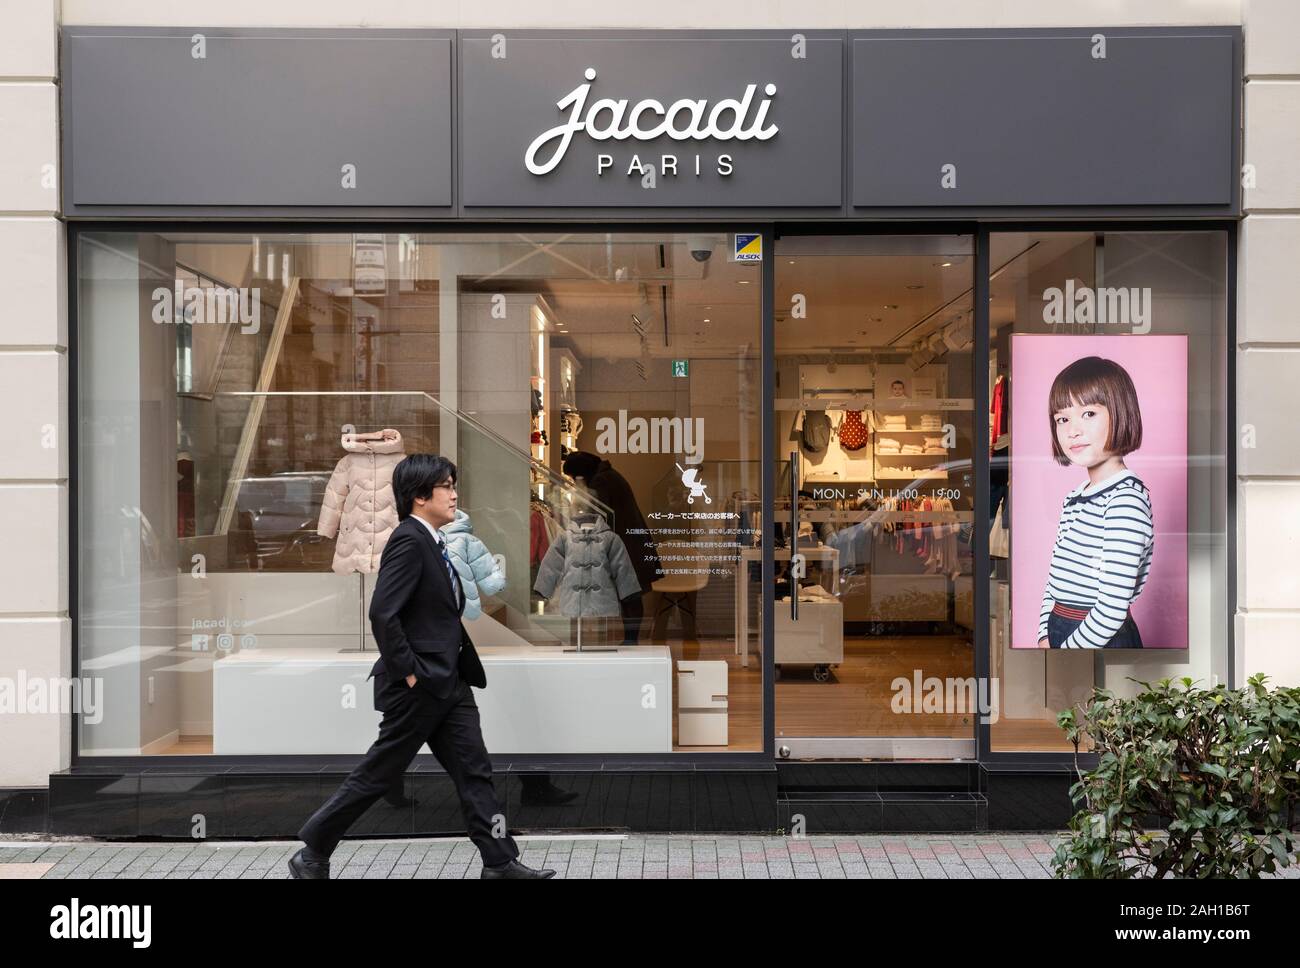 Premio francese di abbigliamento per bambini del marchio in franchising  store Jacadi visto in Tokyo Foto stock - Alamy